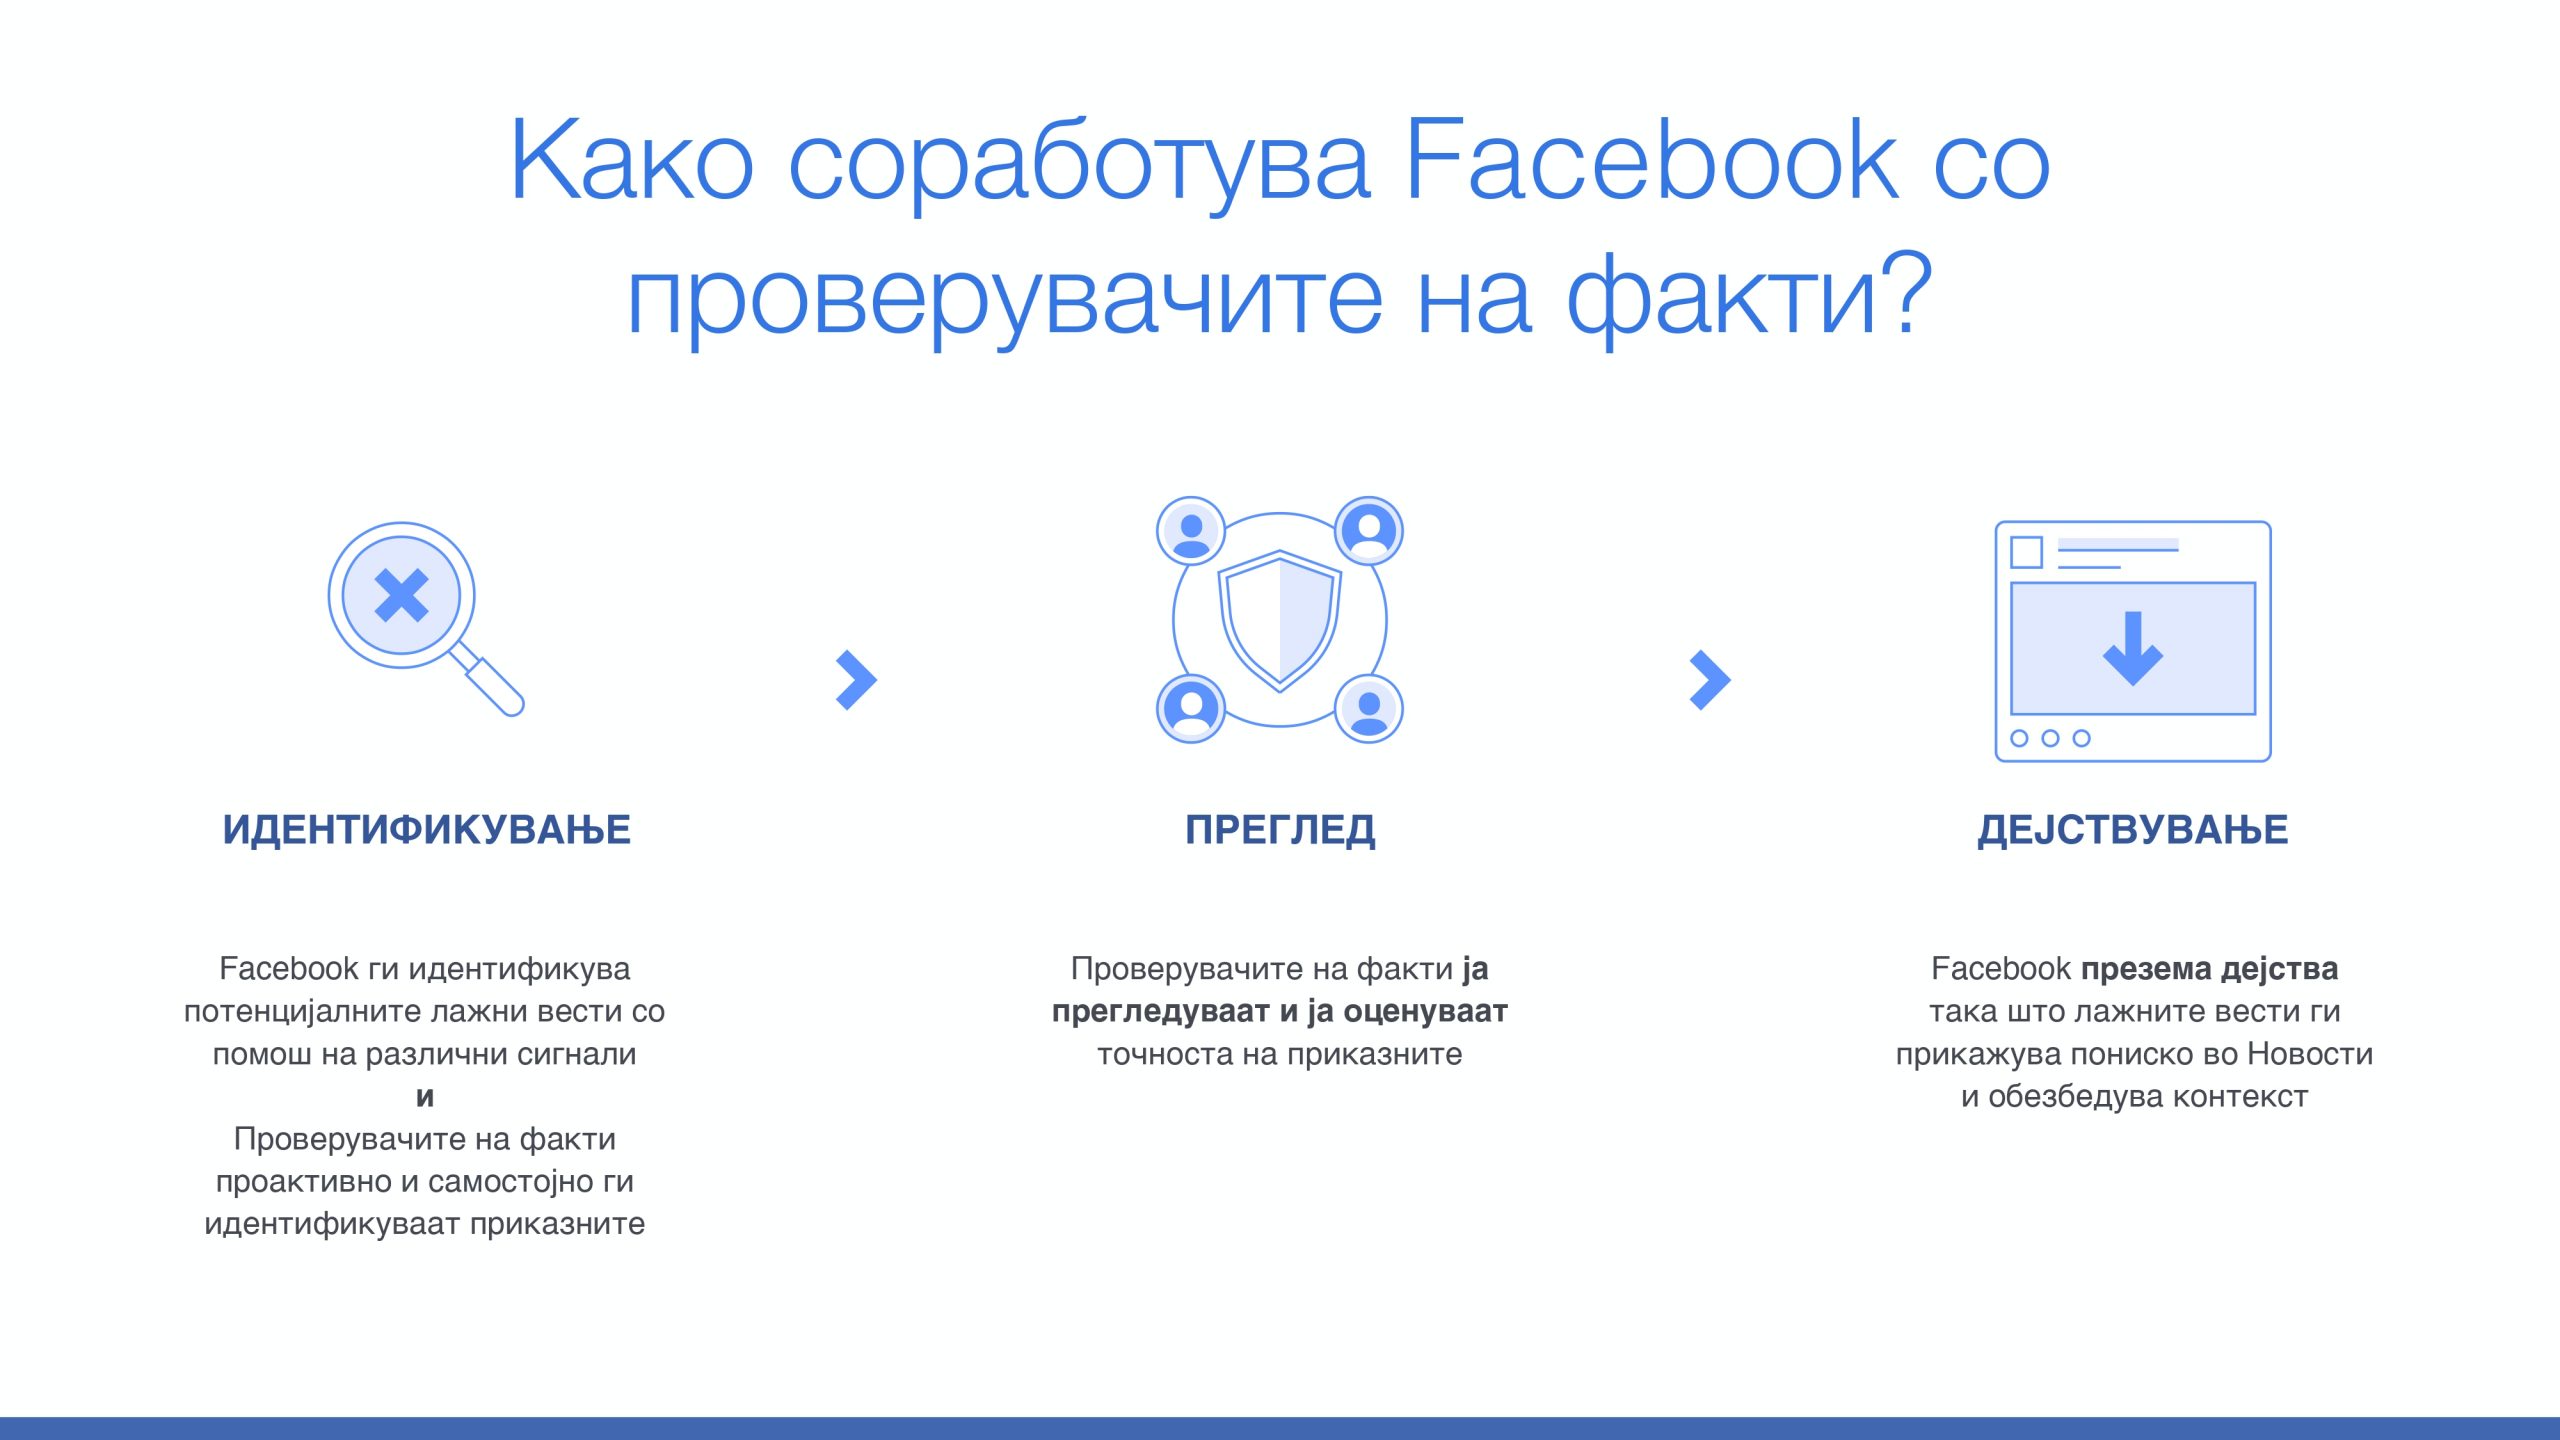 Фејсбук го објави започнувањето на Програмата за проверка на факти од трети страни во С.Македонија